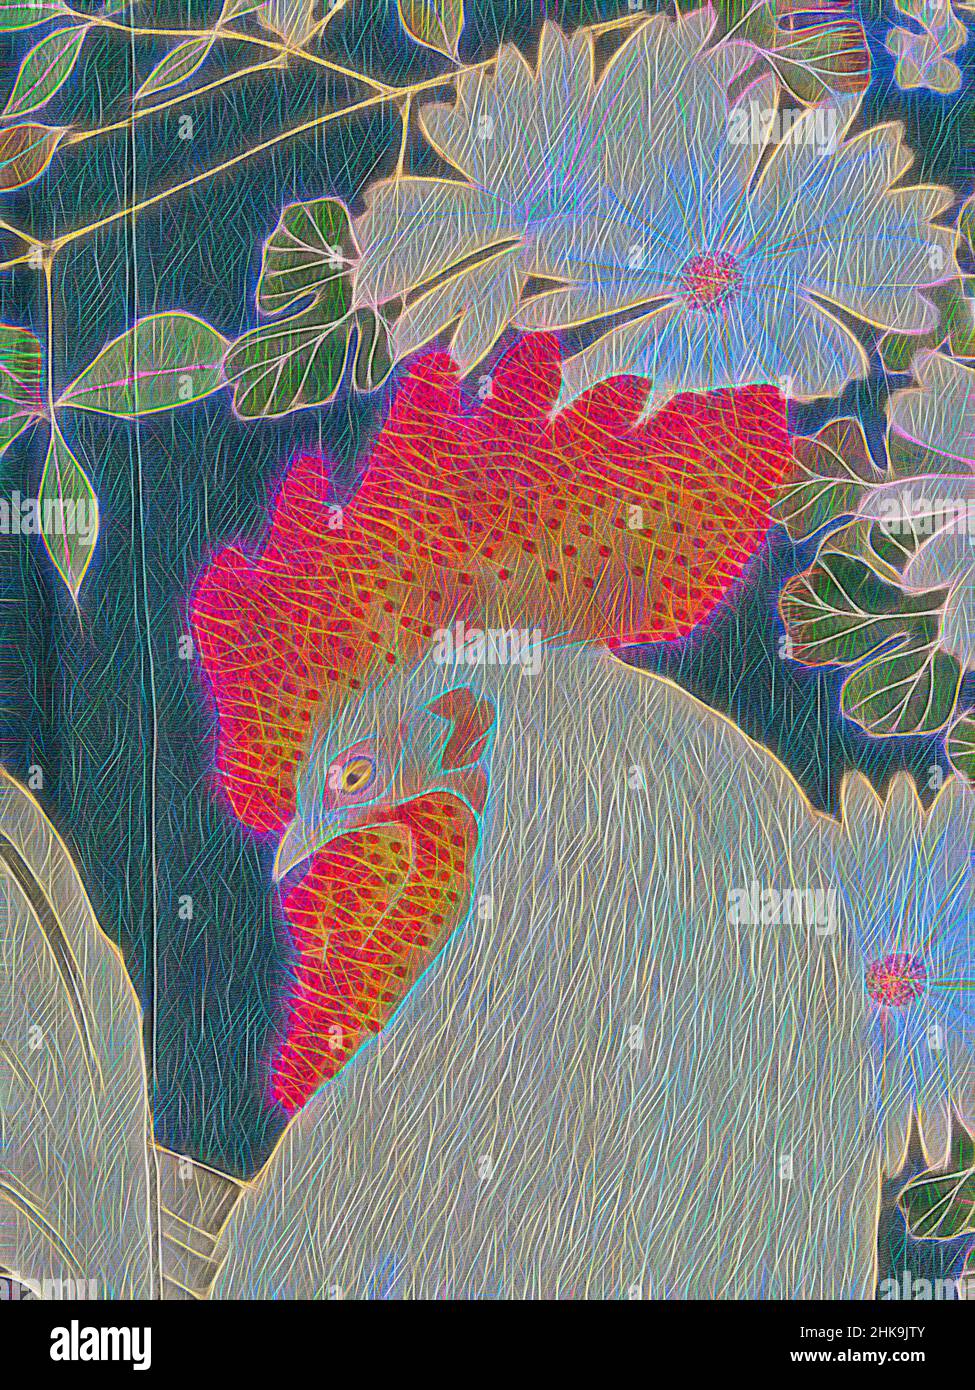 Ispirato al kimono femminile decorato con polli e cockerel, Iro-tomesode con galli e galline, kimono femminile semi-formale colorato (iro-tomesode), con una decorazione interna ed esterna dei pannelli frontali di galline e cockerelle con crisantemi e nandina domestica (bambù celeste). Fine, riimmaginato da Artotop. L'arte classica reinventata con un tocco moderno. Design di calda e allegra luminosità e di raggi di luce. La fotografia si ispira al surrealismo e al futurismo, abbracciando l'energia dinamica della tecnologia moderna, del movimento, della velocità e rivoluzionando la cultura Foto Stock